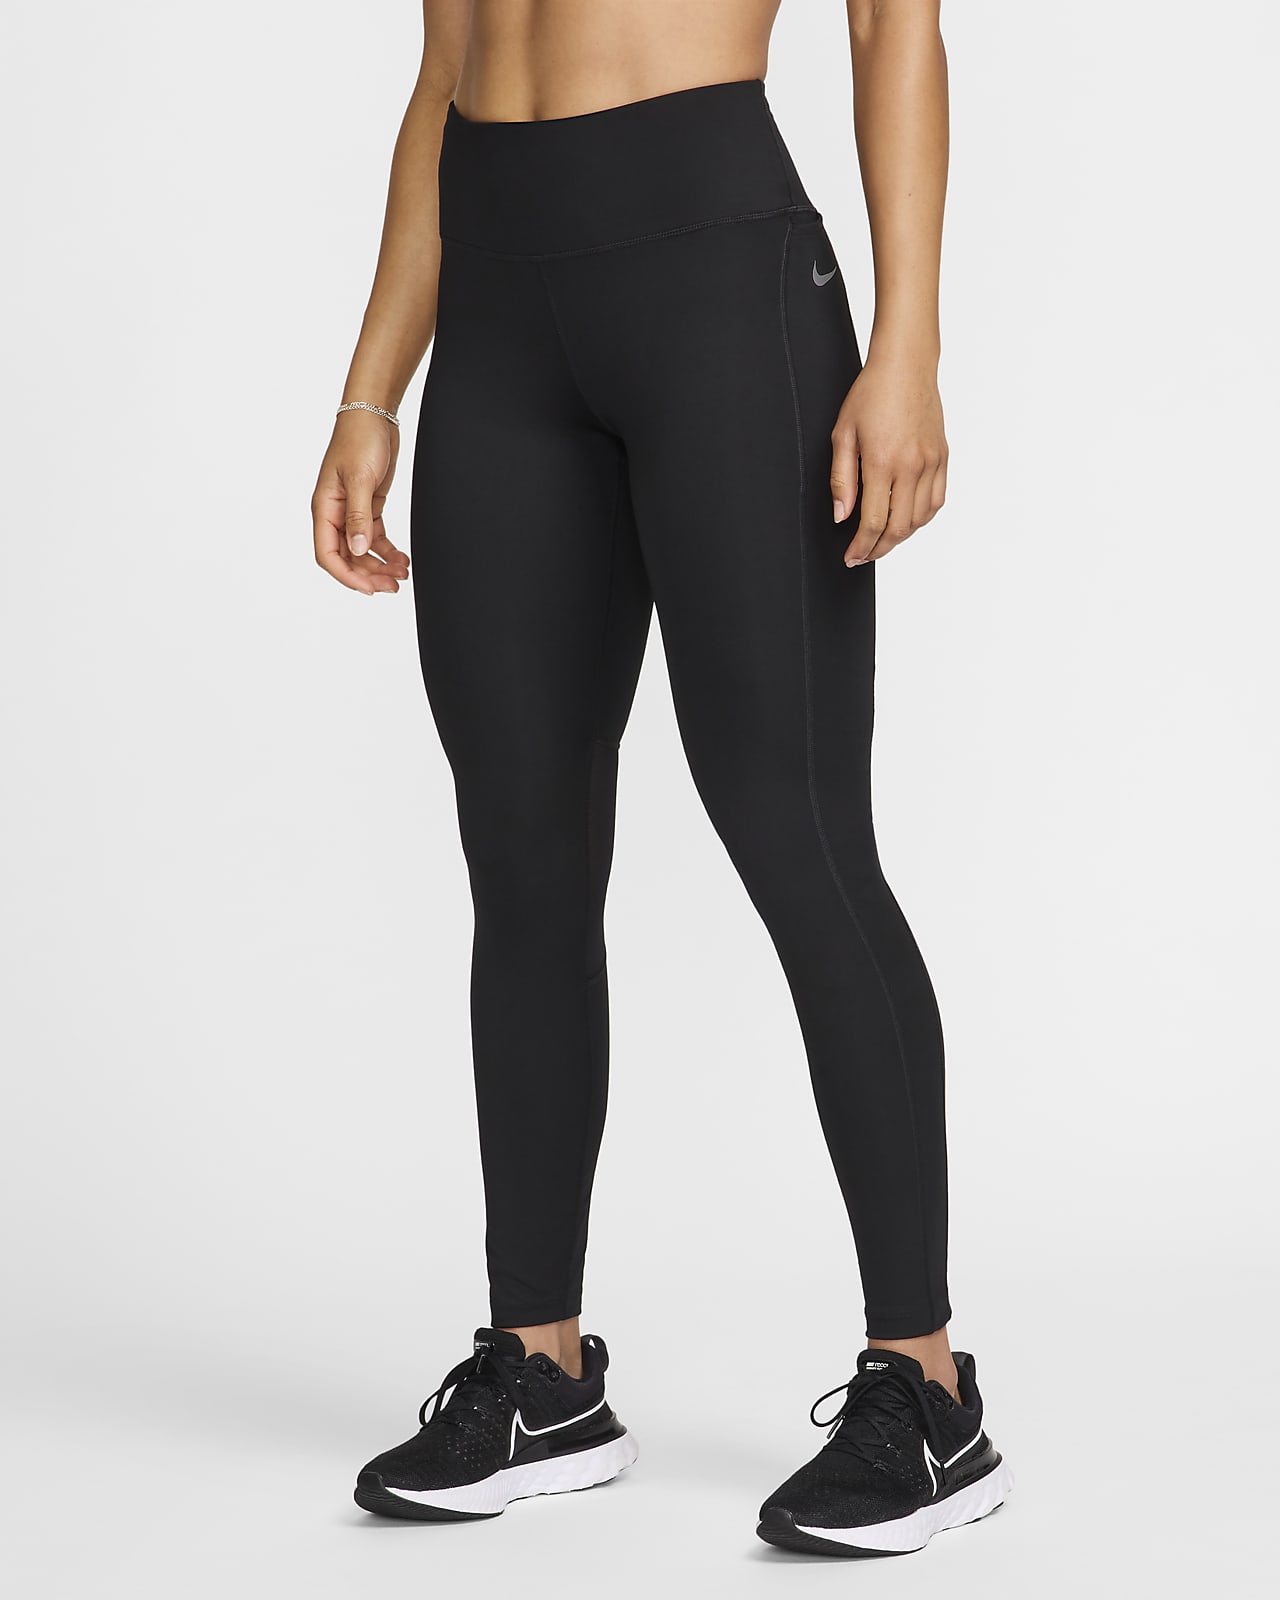 Fast Mid-Rise Pocket Running Leggings. Nike NL